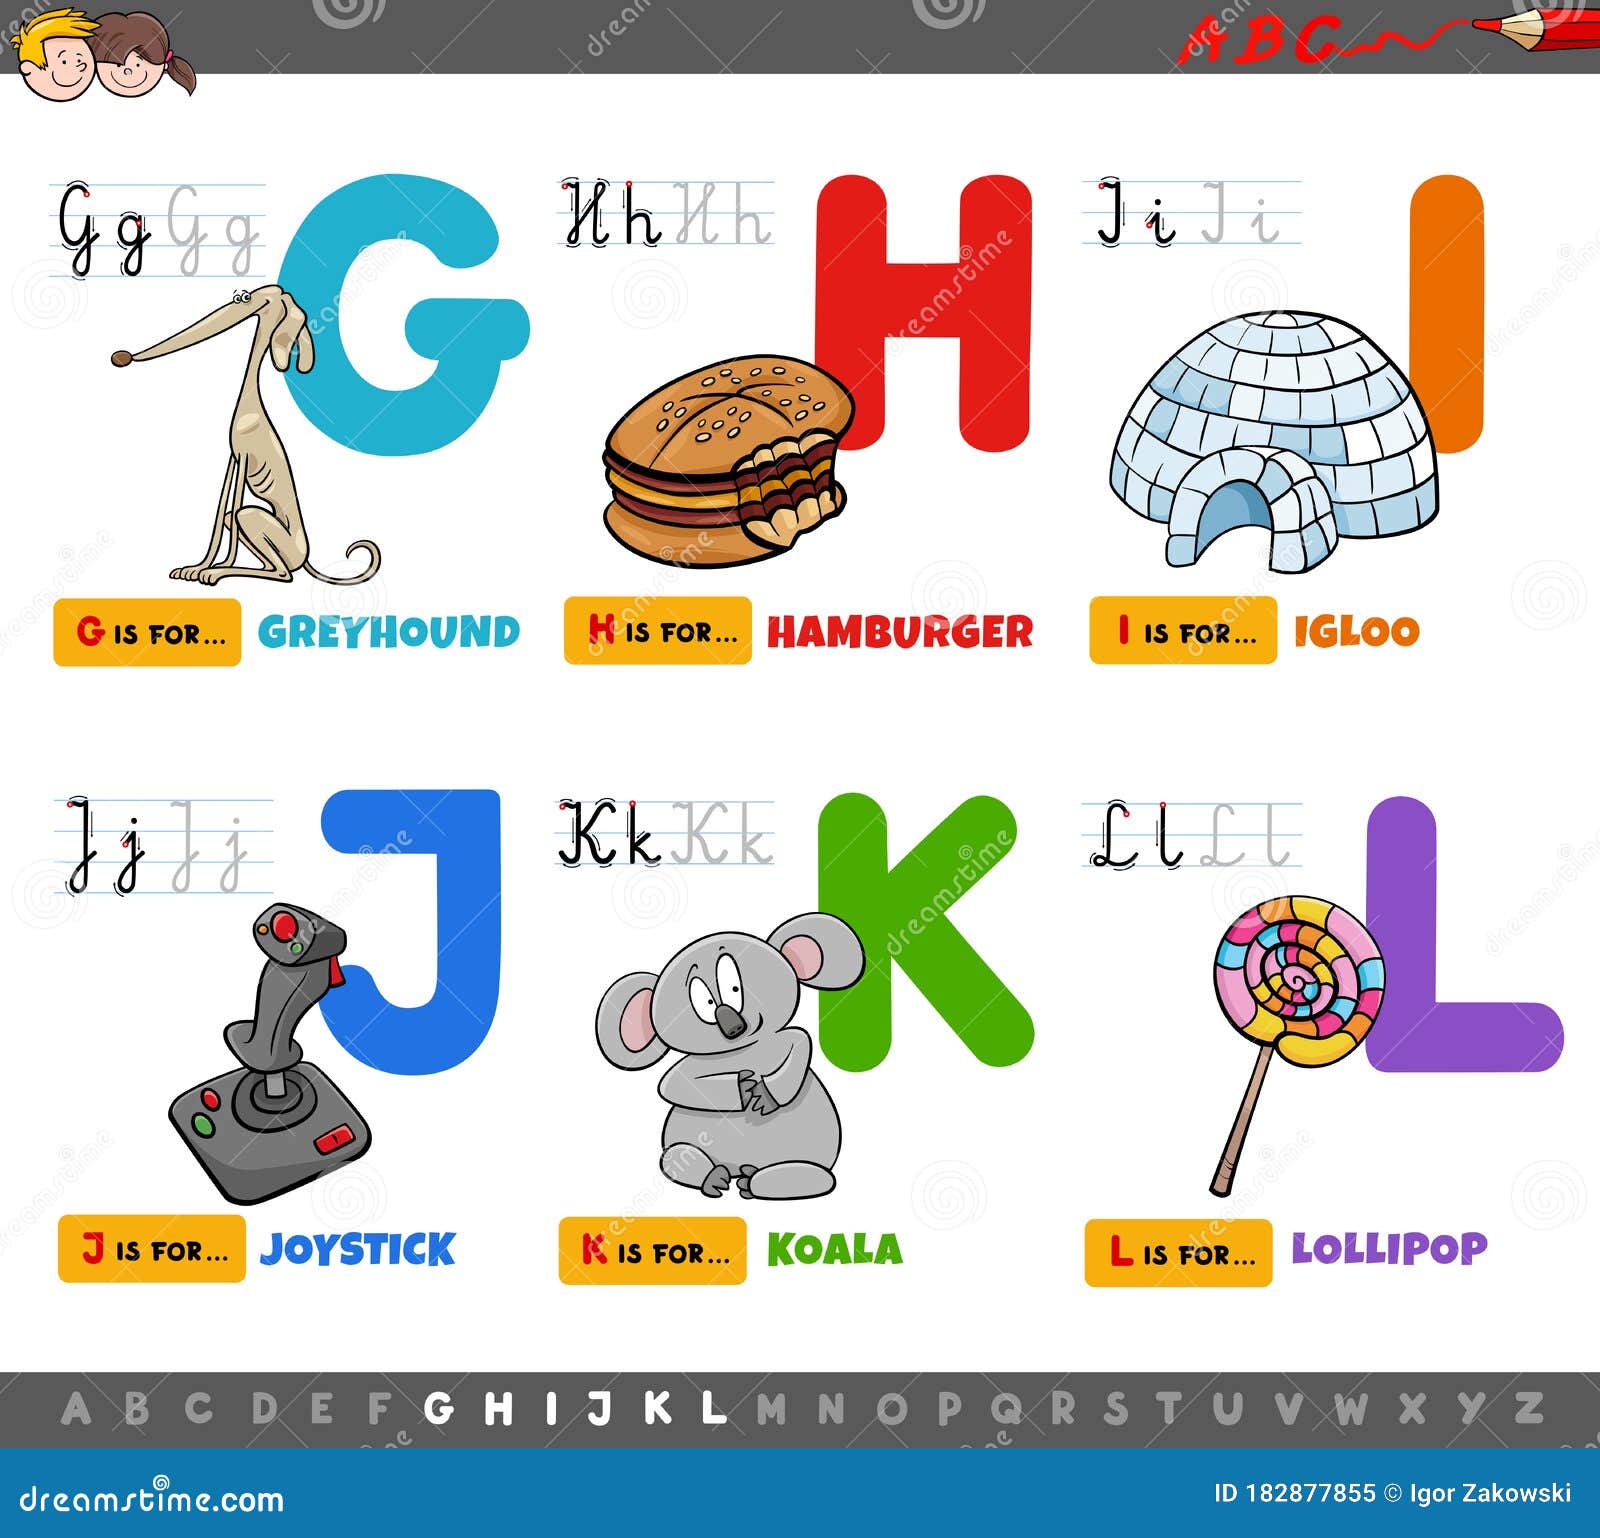 edu kids alphabet